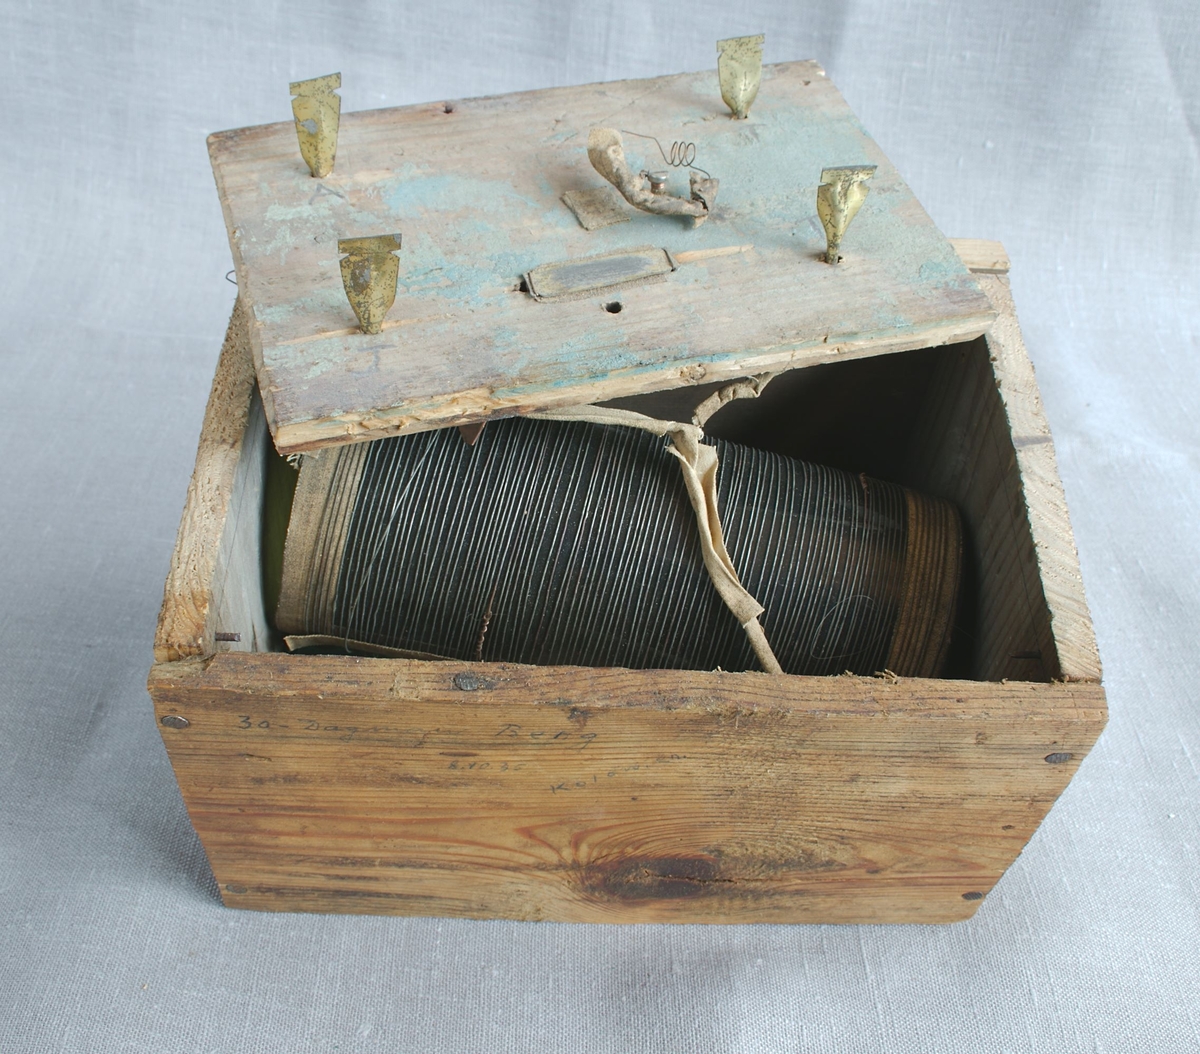 Hjemmelaget radioapparat laget av en trekasse med lokk og ståltråd kveilet opp på en glassylinder. Potteskår, deler av en glassflaske og en ledning medfølger.